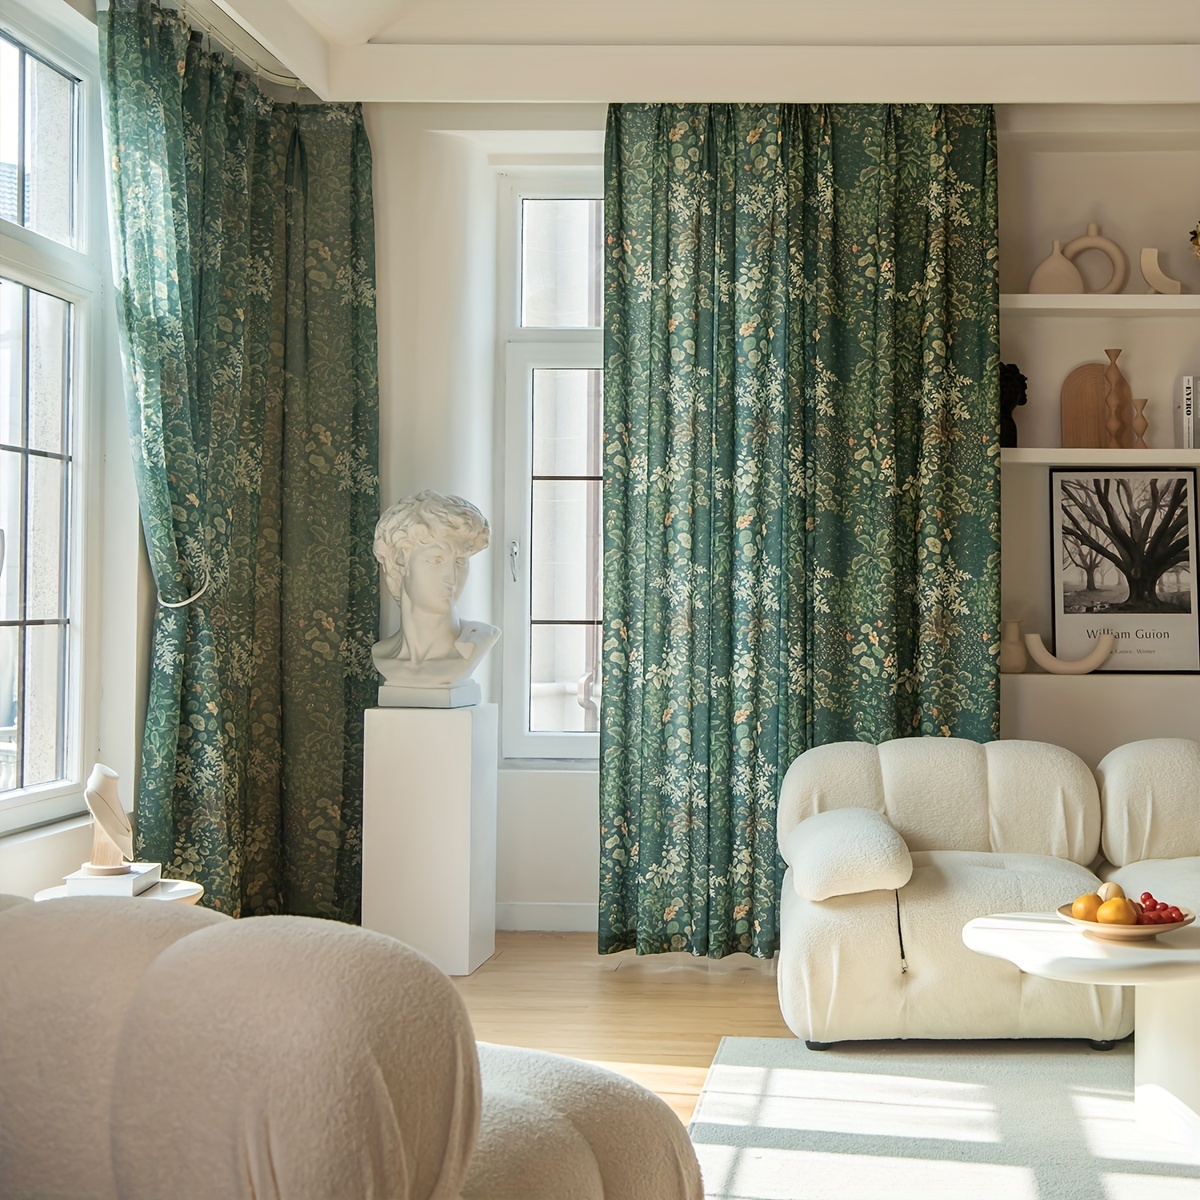 Cortinas verde esmeralda de 108 para sala de estar, cortinas opacas de  terciopelo con bolsillo para barra, para ventana, tratamiento de semi